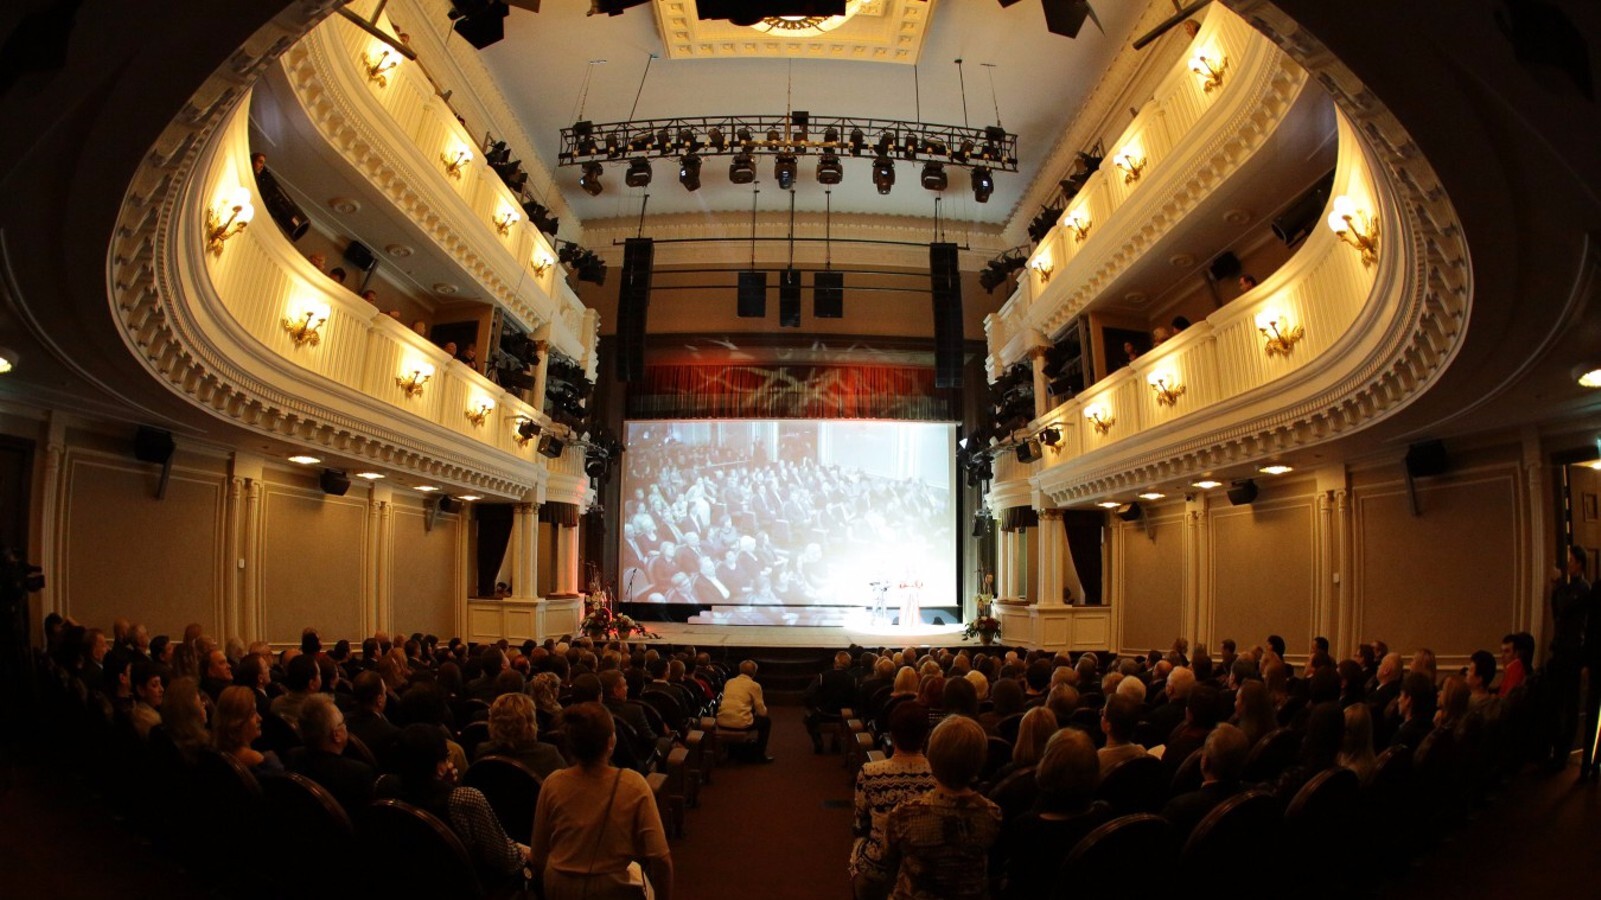 Театр пушкина официальный сайт москва